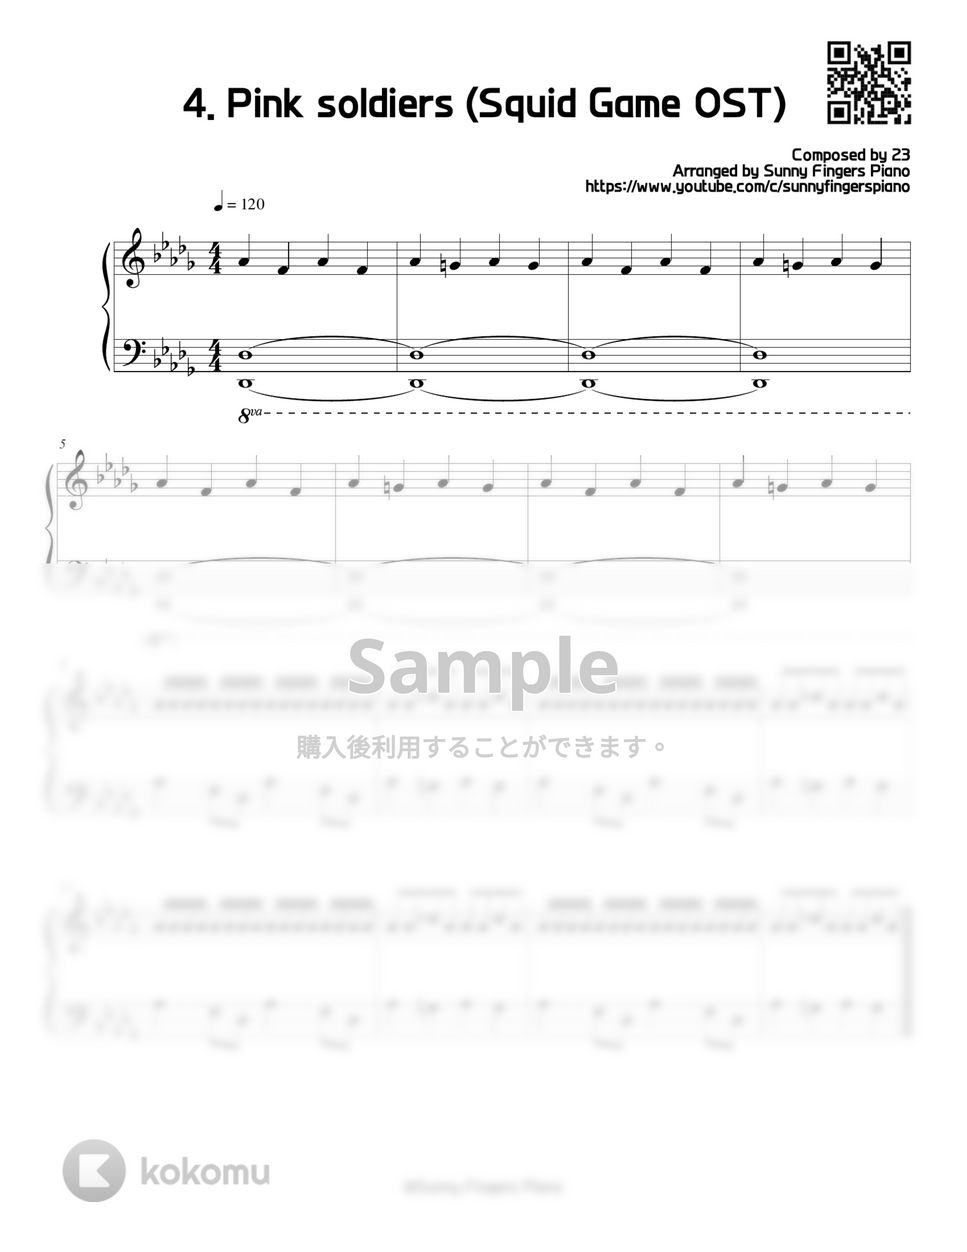 イカゲーム OST / BGM - 4. Pink soldiers theme (Series) by Sunny Fingers Piano